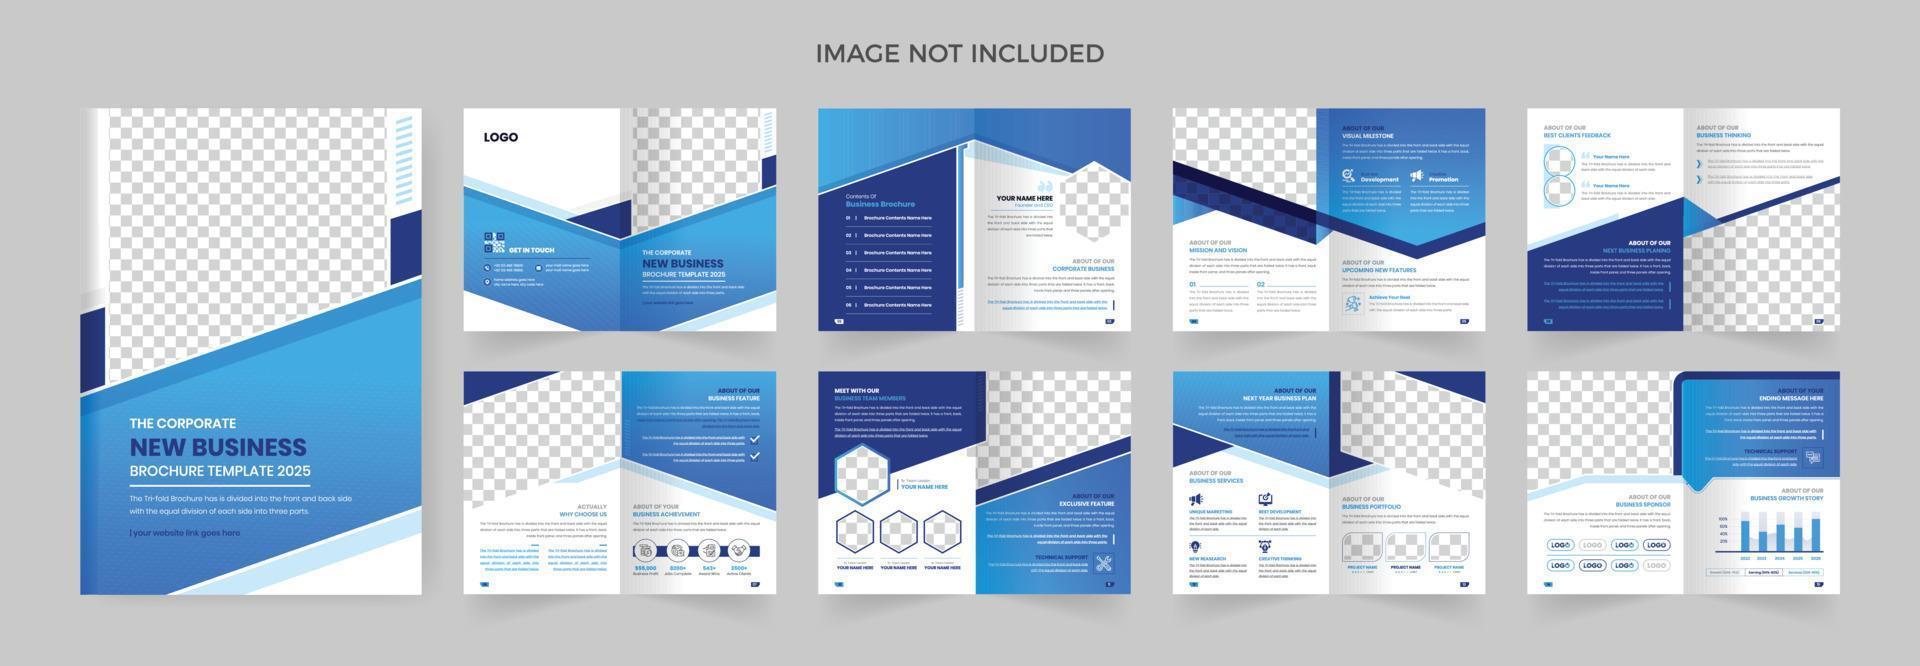 Corporate Business Broschüre Designvorlage 16 Seiten Firmenbroschüre buntes Layout vektor